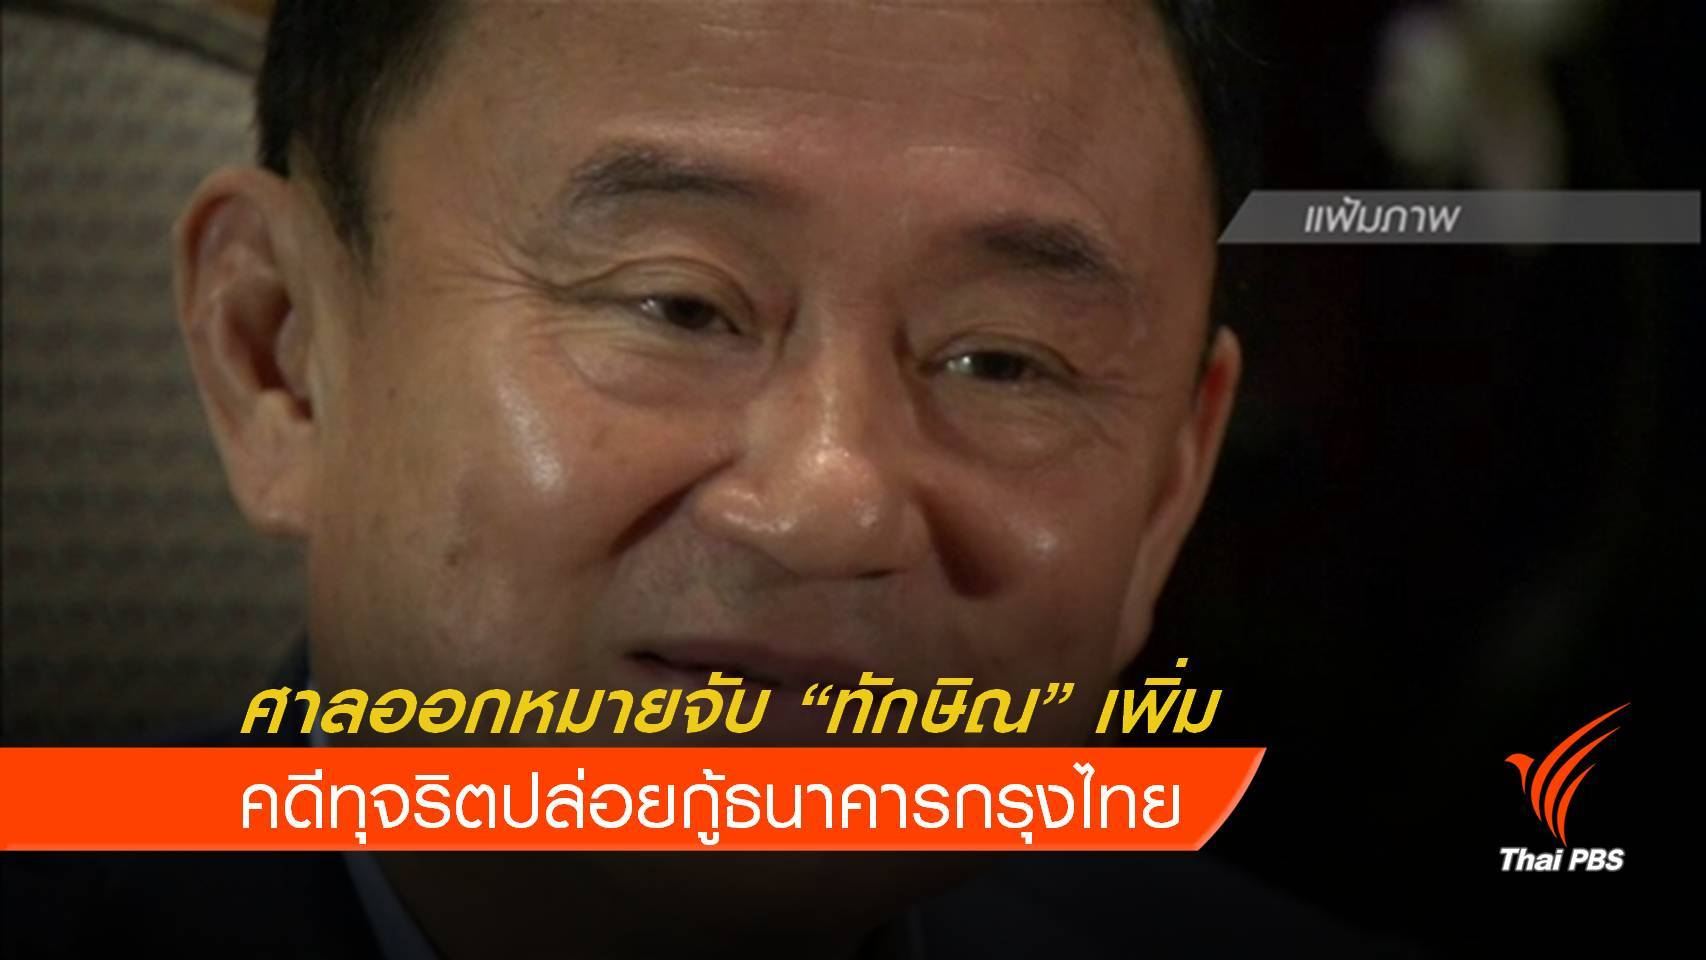  ศาลออกหมายจับ "ทักษิณ" เพิ่ม คดีทุจริตปล่อยกู้ธนาคารกรุงไทย 